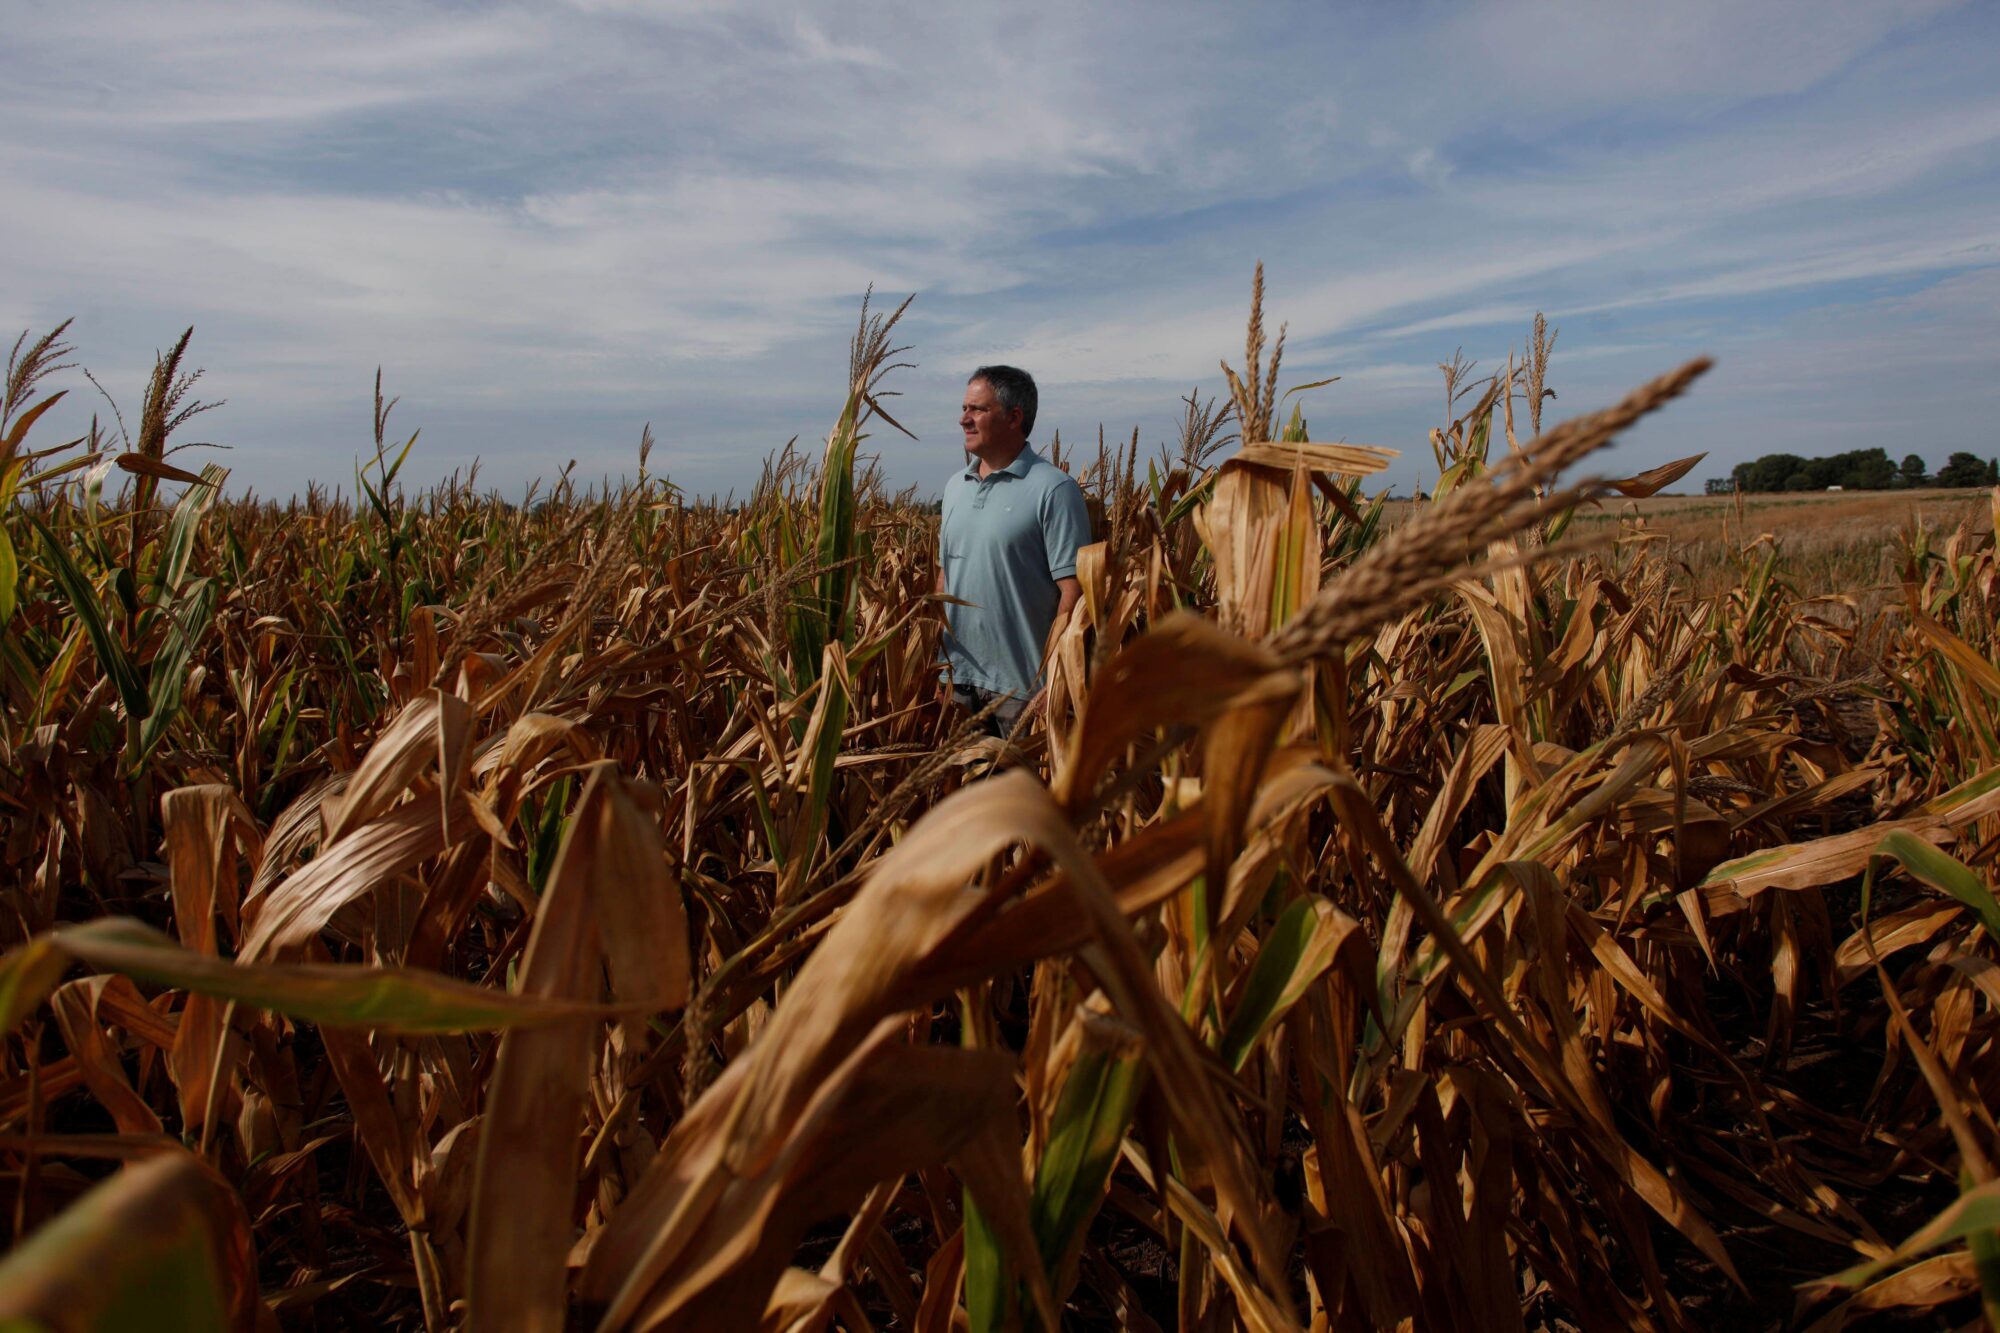 <p>Un agricultor en un campo de maíz afectado por la sequía cerca de Chivilcoy, Argentina. La sequía ha sido una amenaza recurrente en las regiones agrícolas del país, pero un tercer año consecutivo de La Niña ha intensificado los desafíos (Imagen: Martin Acosta / Alamy)</p>